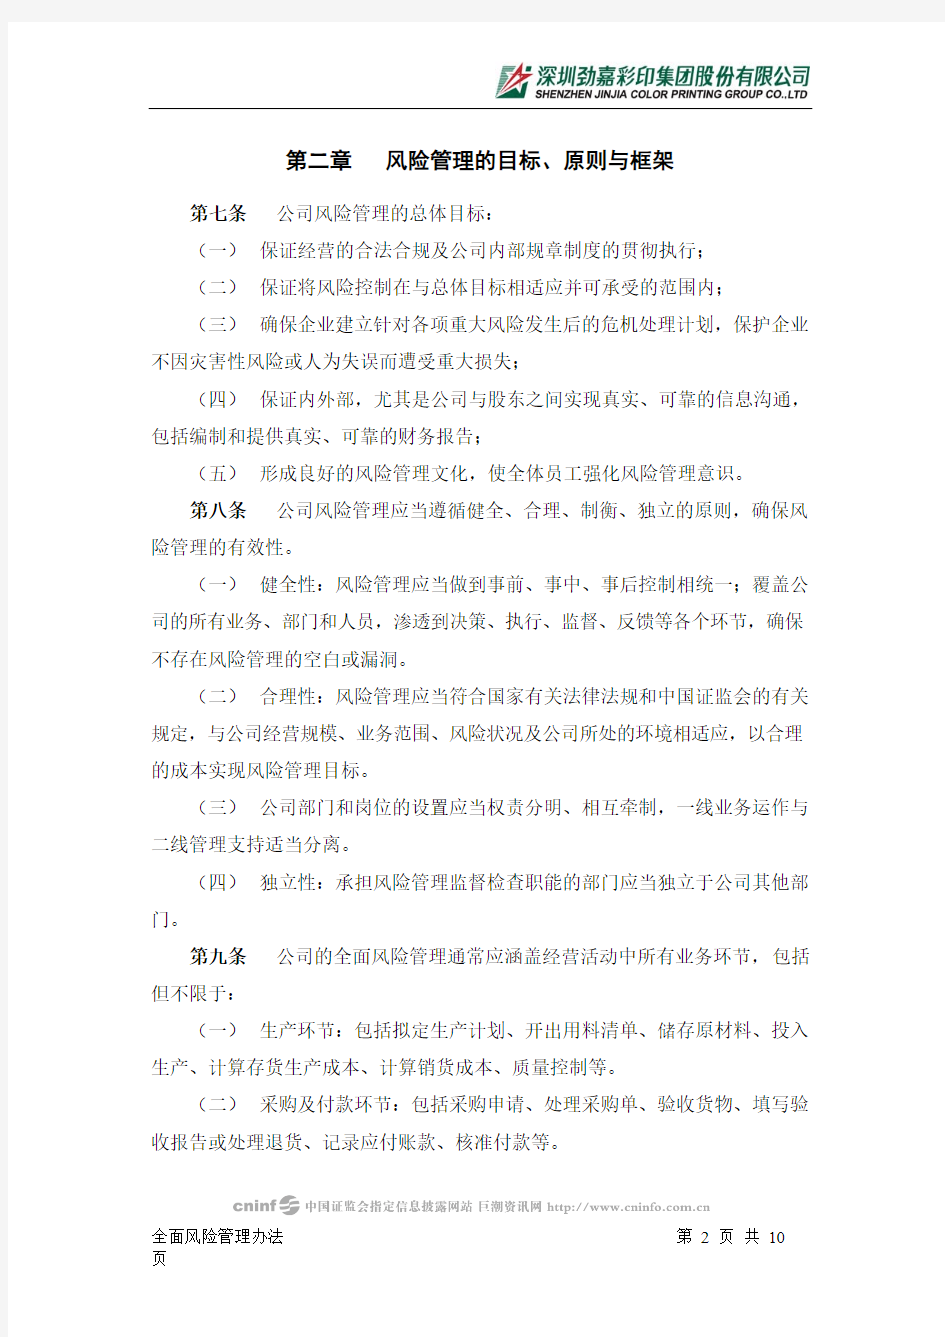 深圳劲嘉彩印集团股份有限公司全面风险管理办法